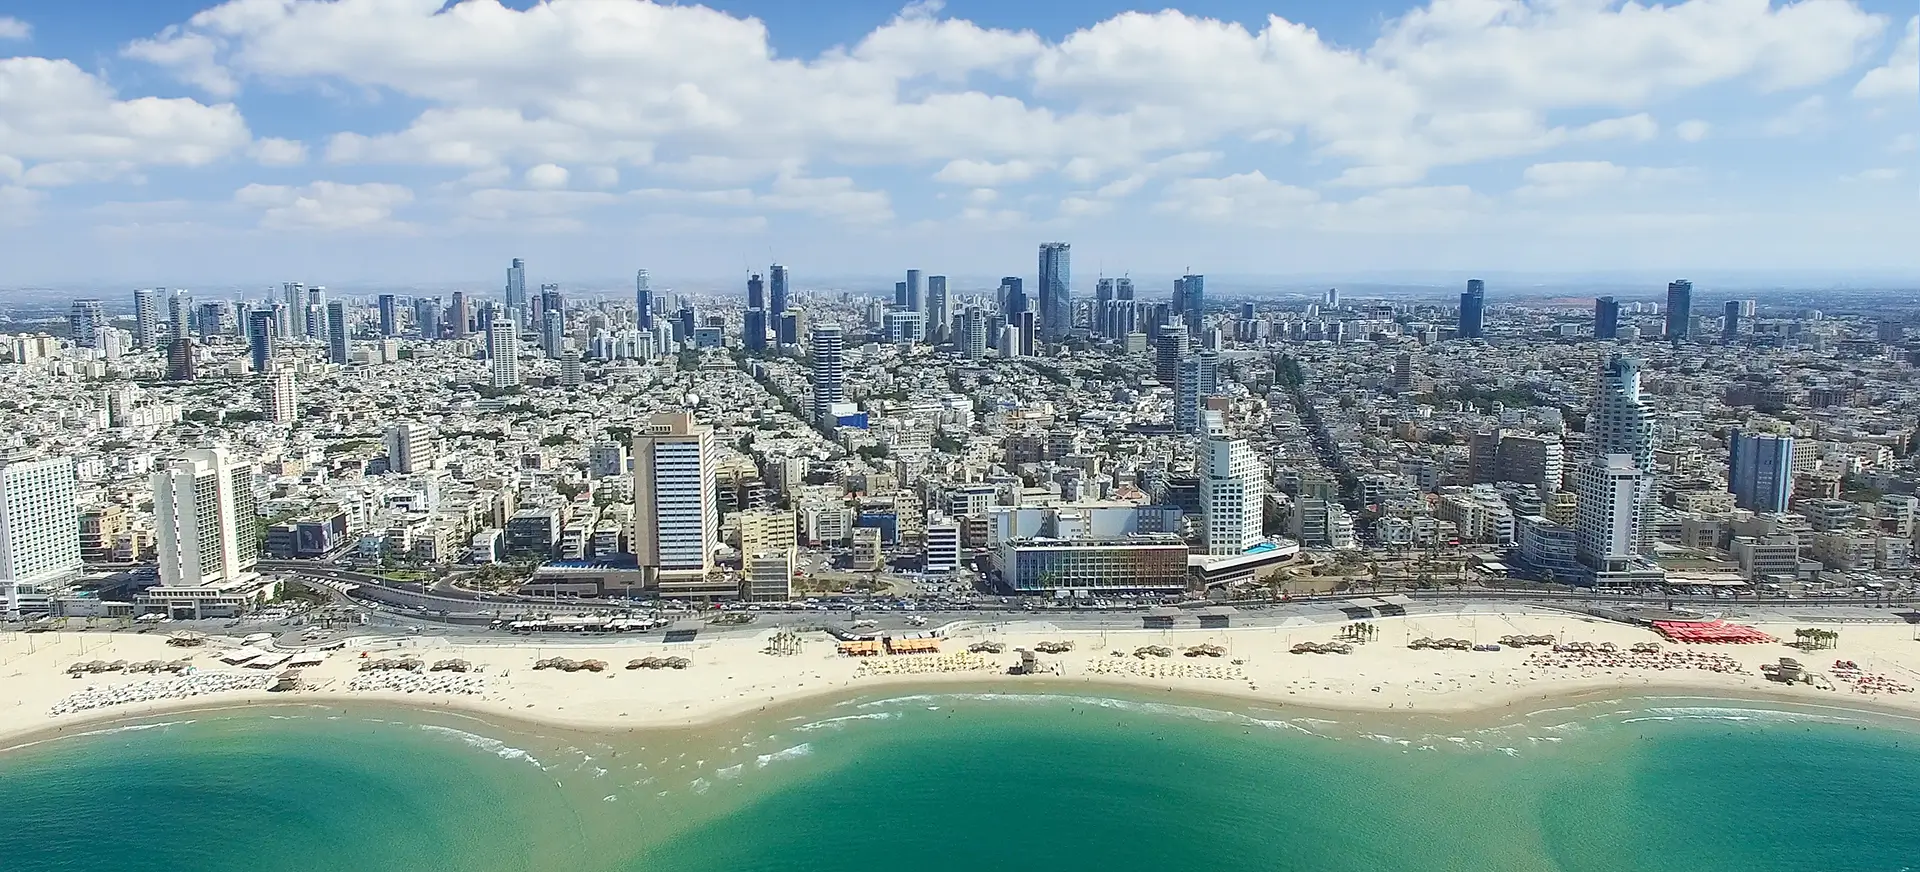 Tel Aviv's shoreline during the day